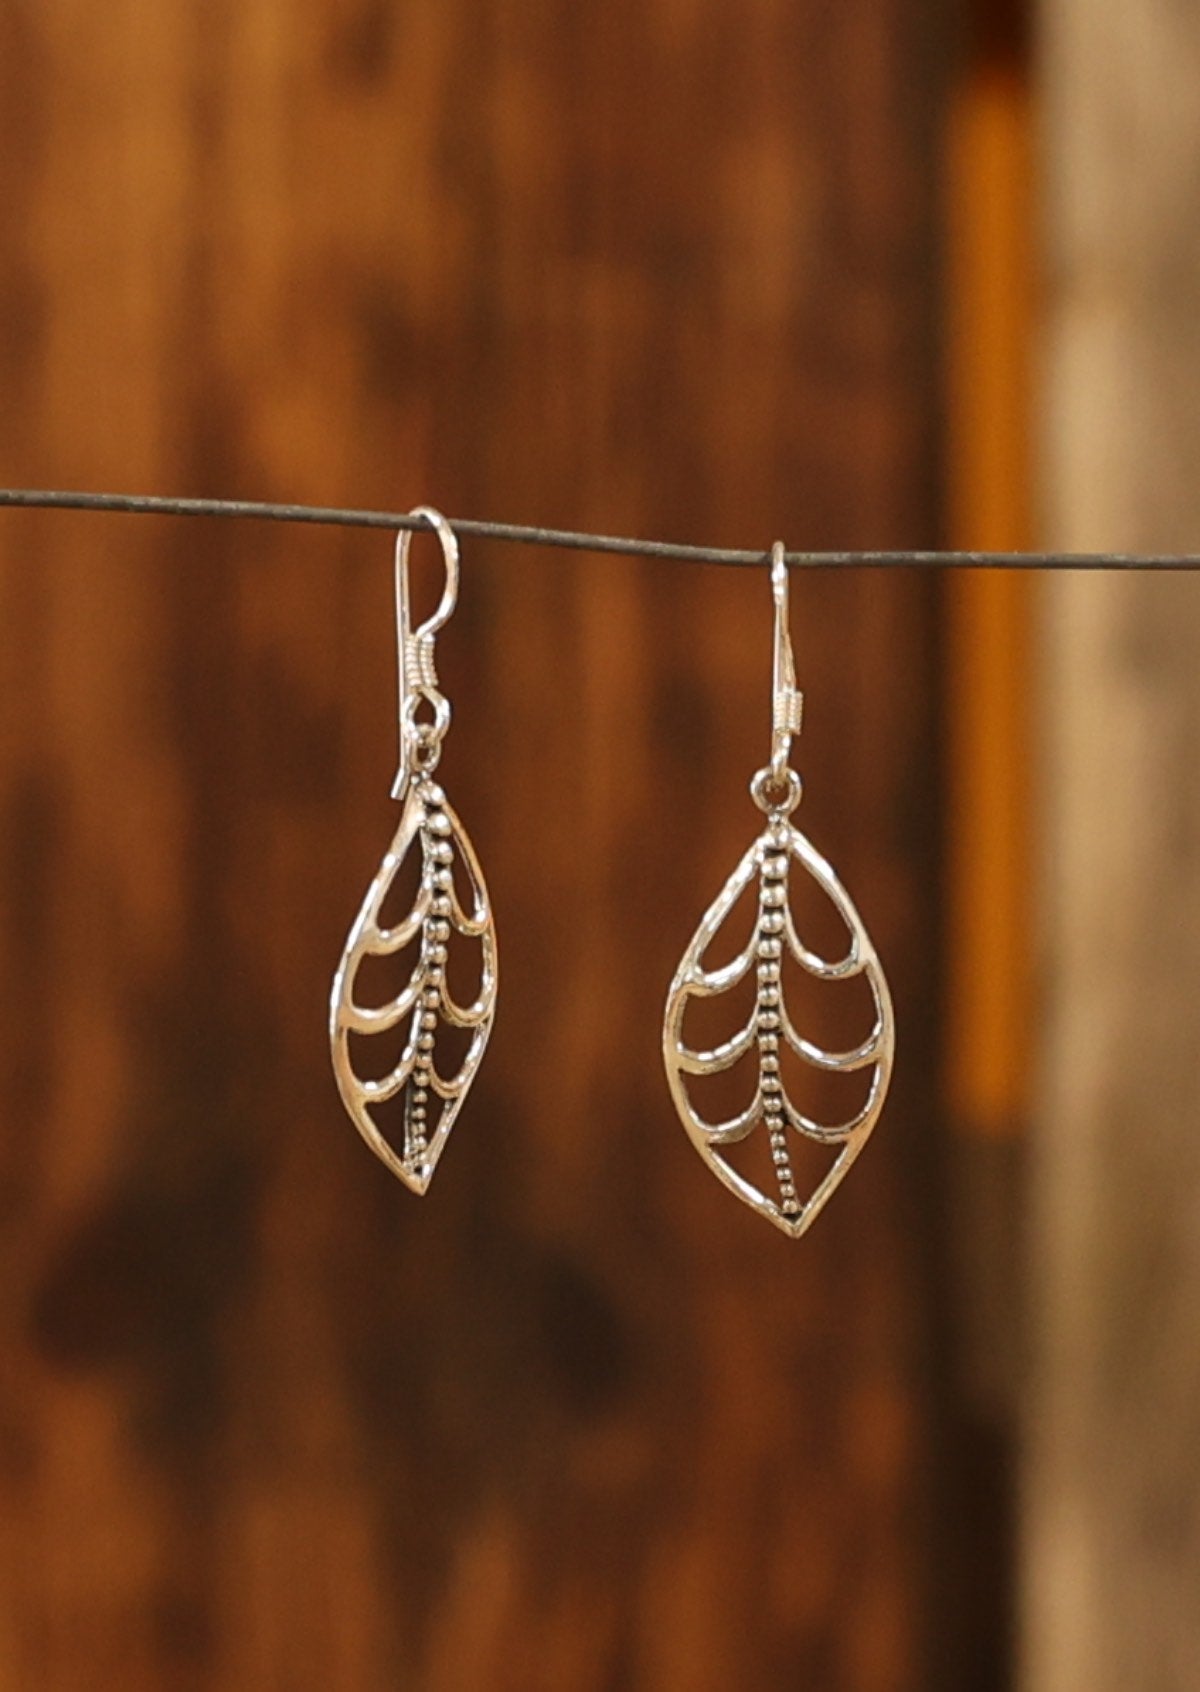 Sterling silver hook earrings with beautiful leaf skeleton